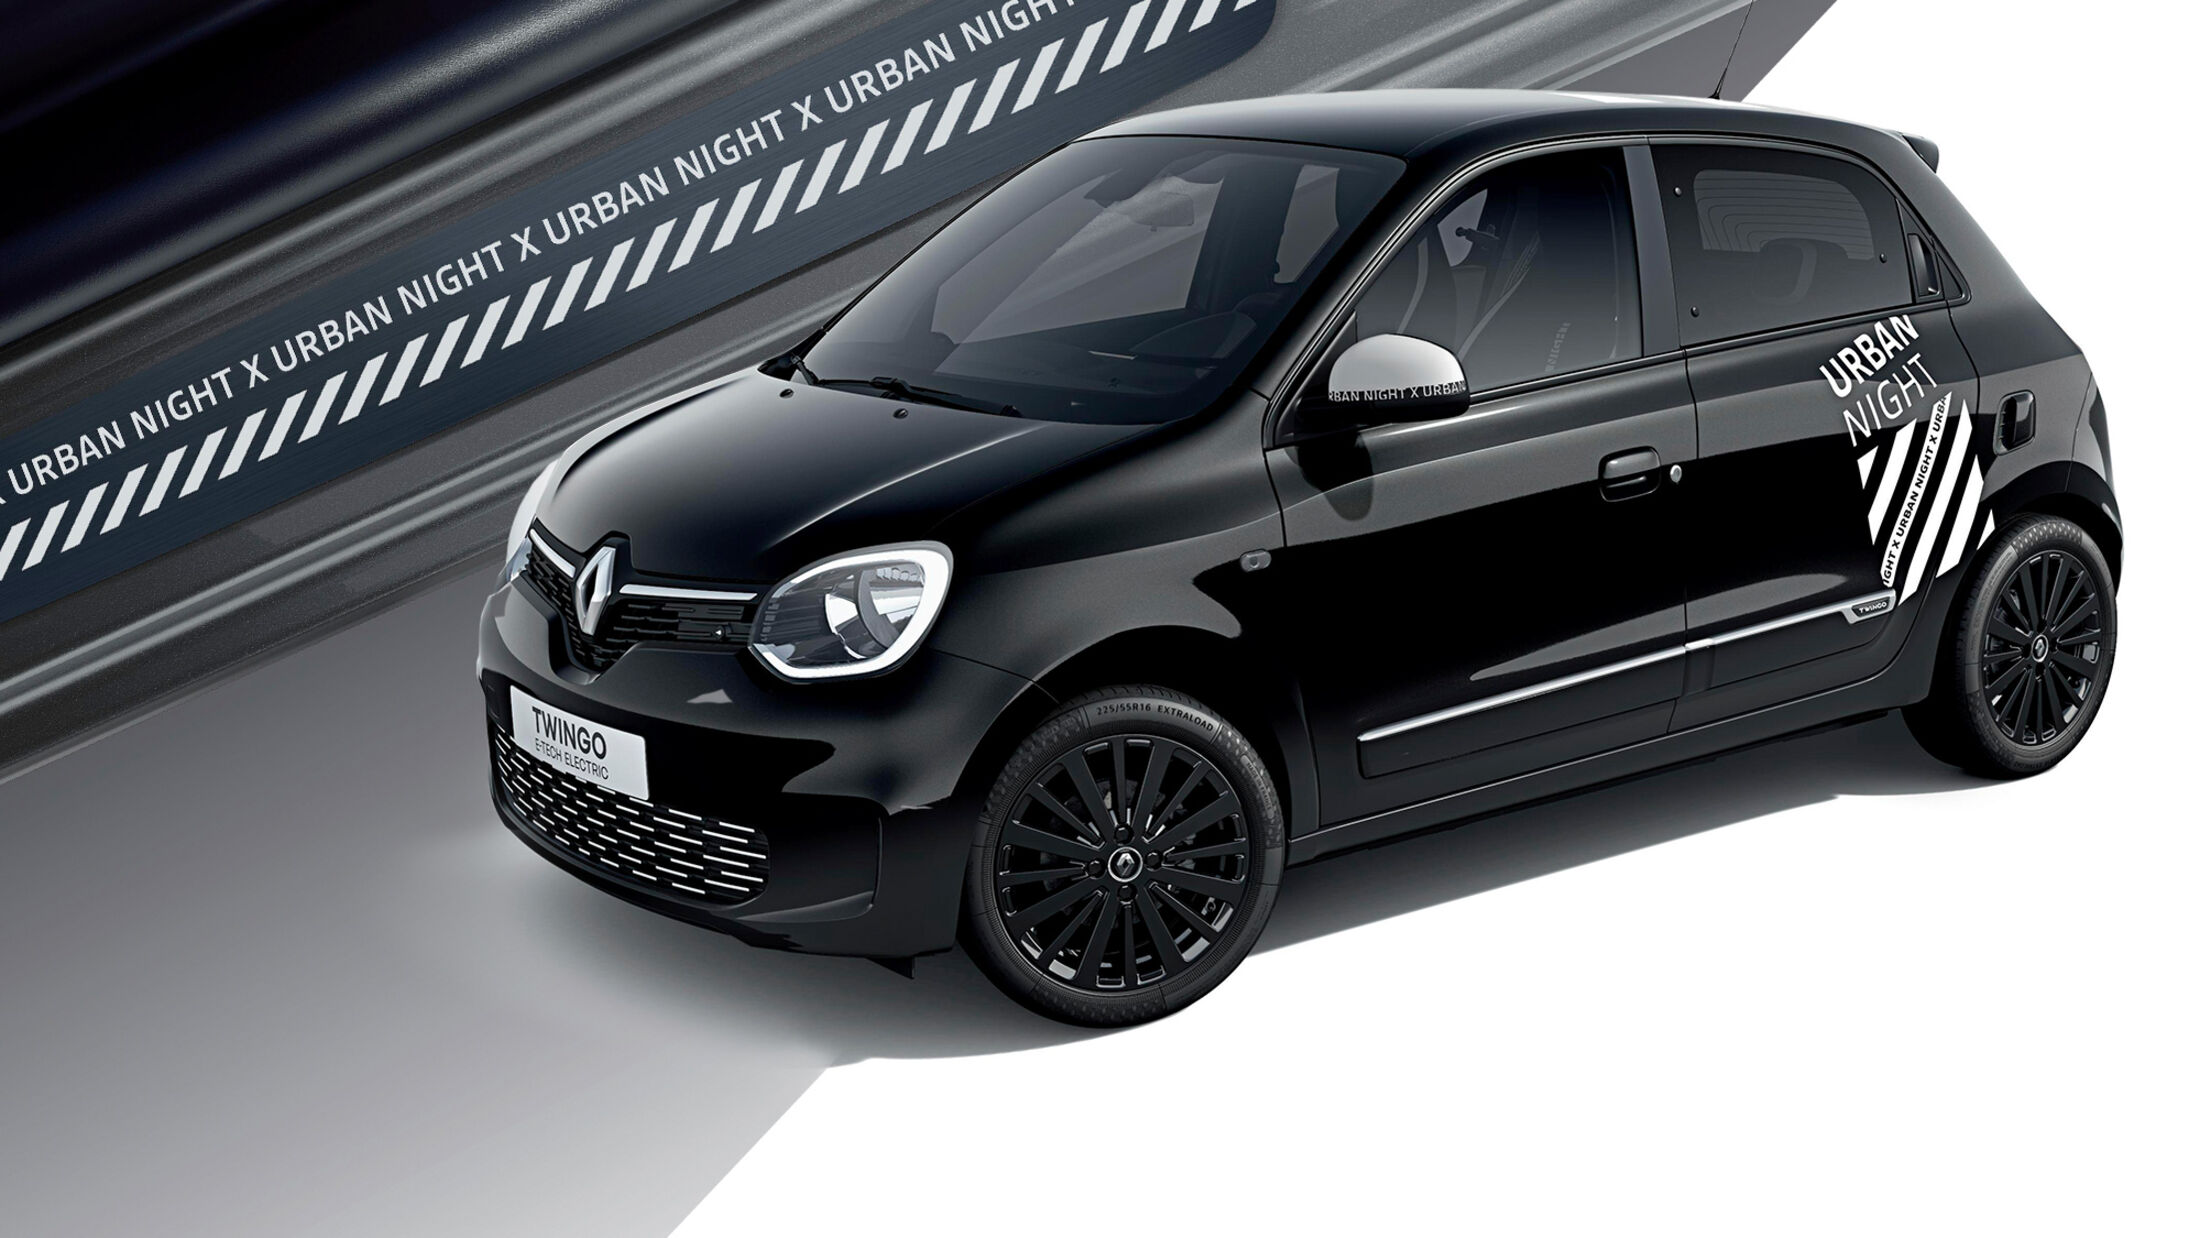 Schwarz-weißes Schnäppchen: Renault Twingo Urban Night